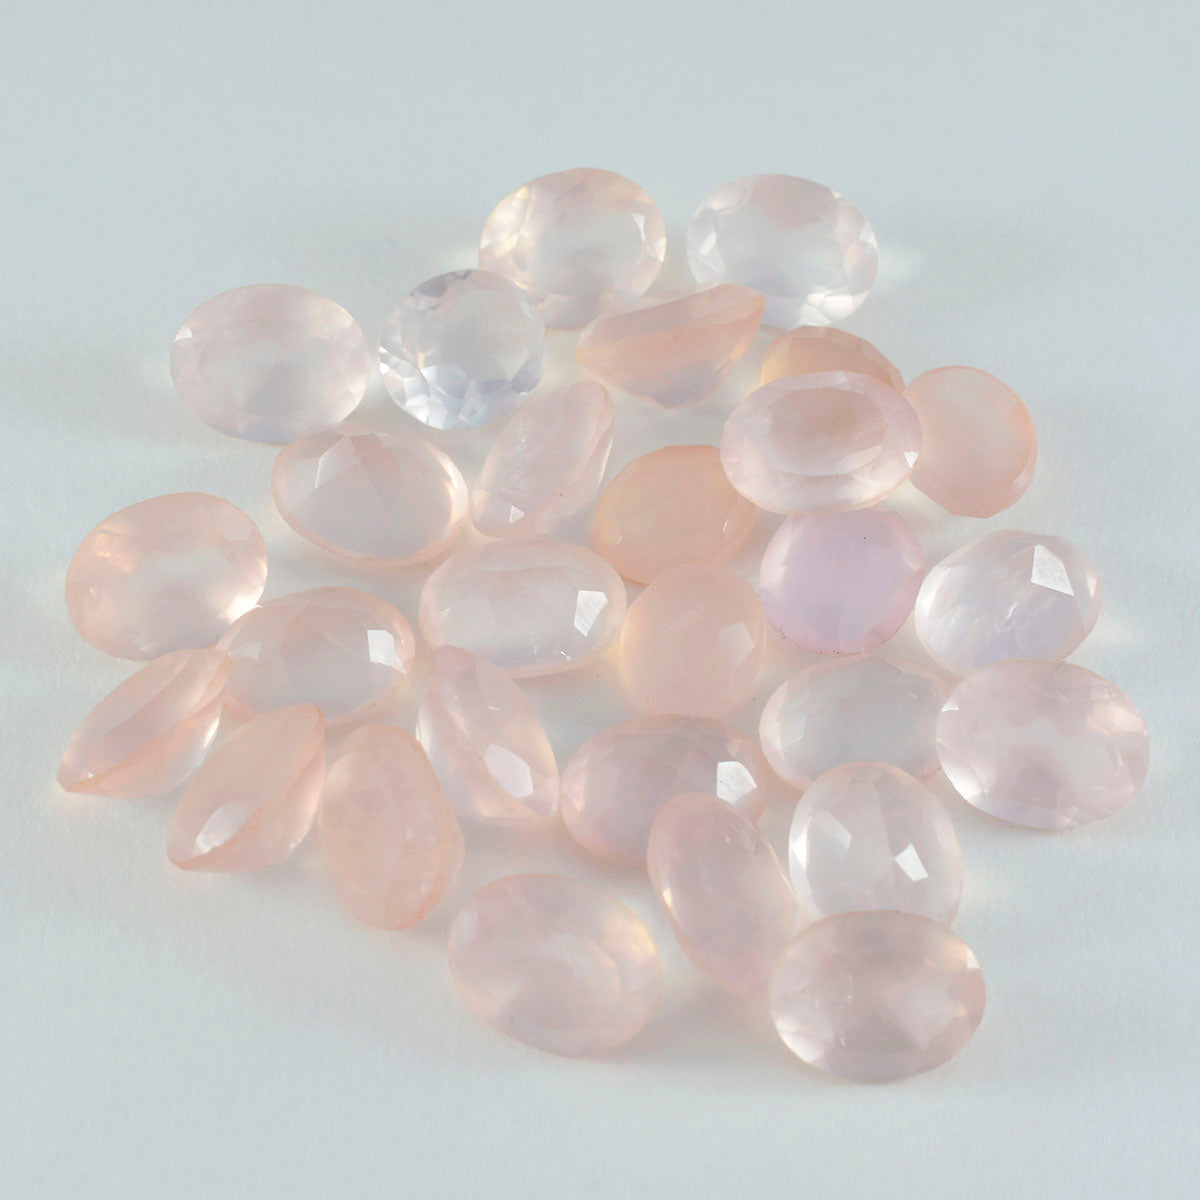 Riyogems 1PC Pink Rose Quartz Faceted 7x9 mm Oval Shape astonishing Quality Stone